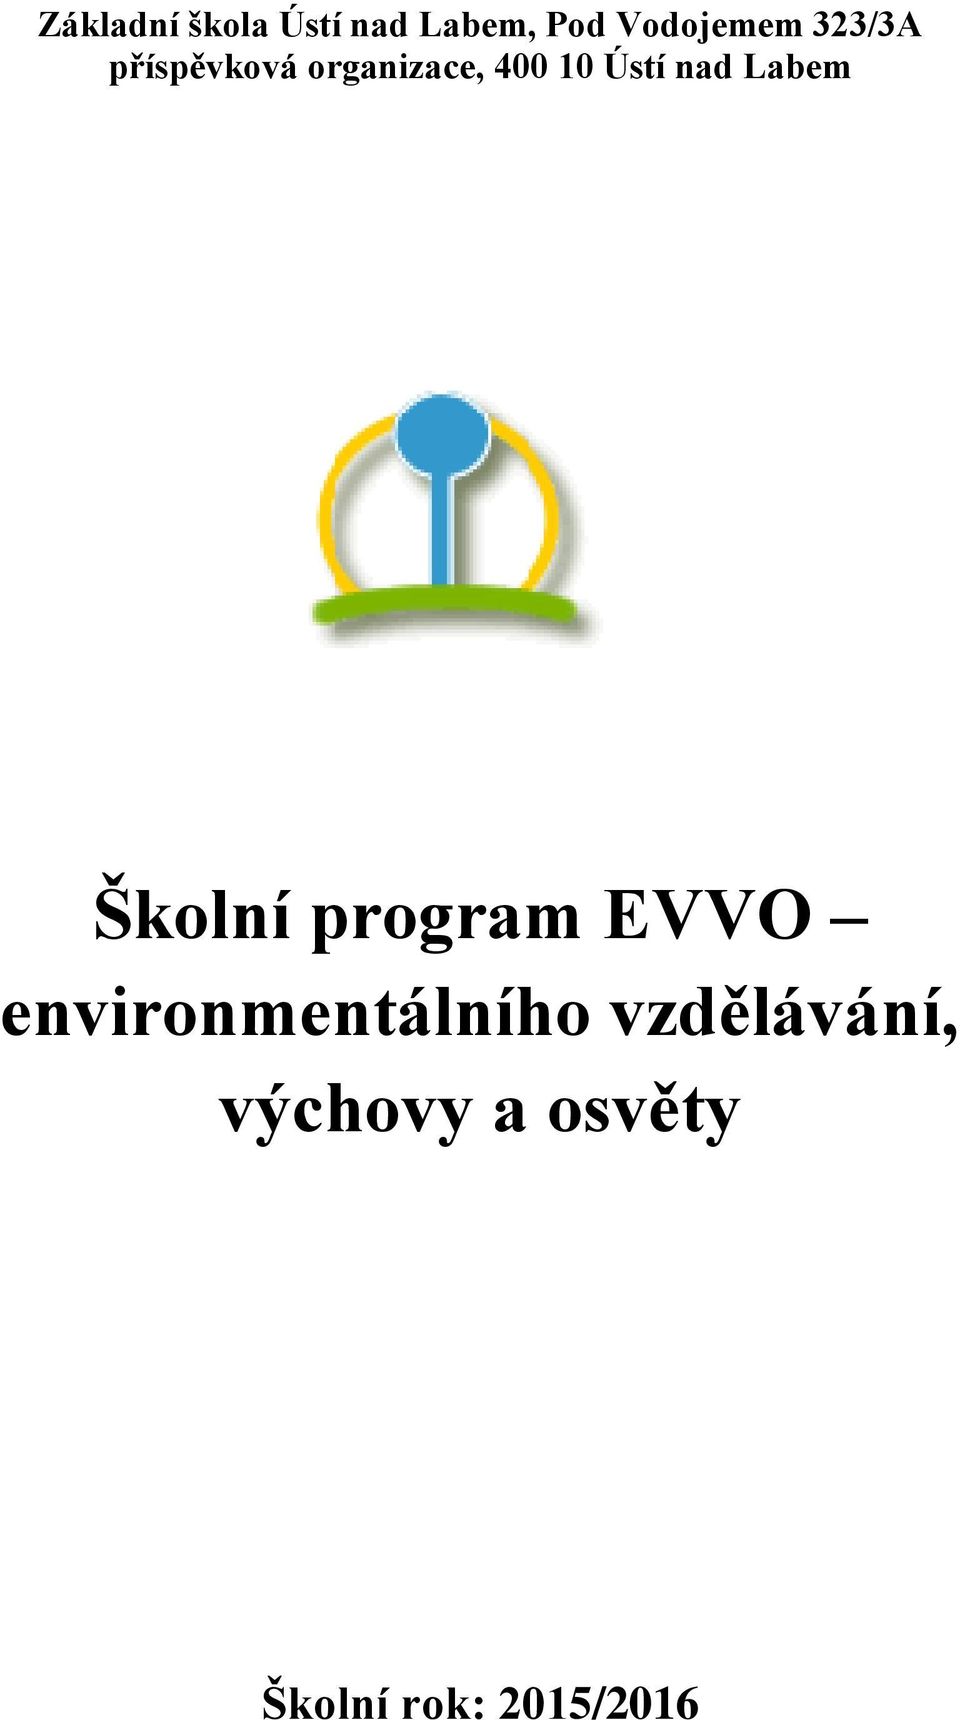 Labem Školní program EVVO environmentálního